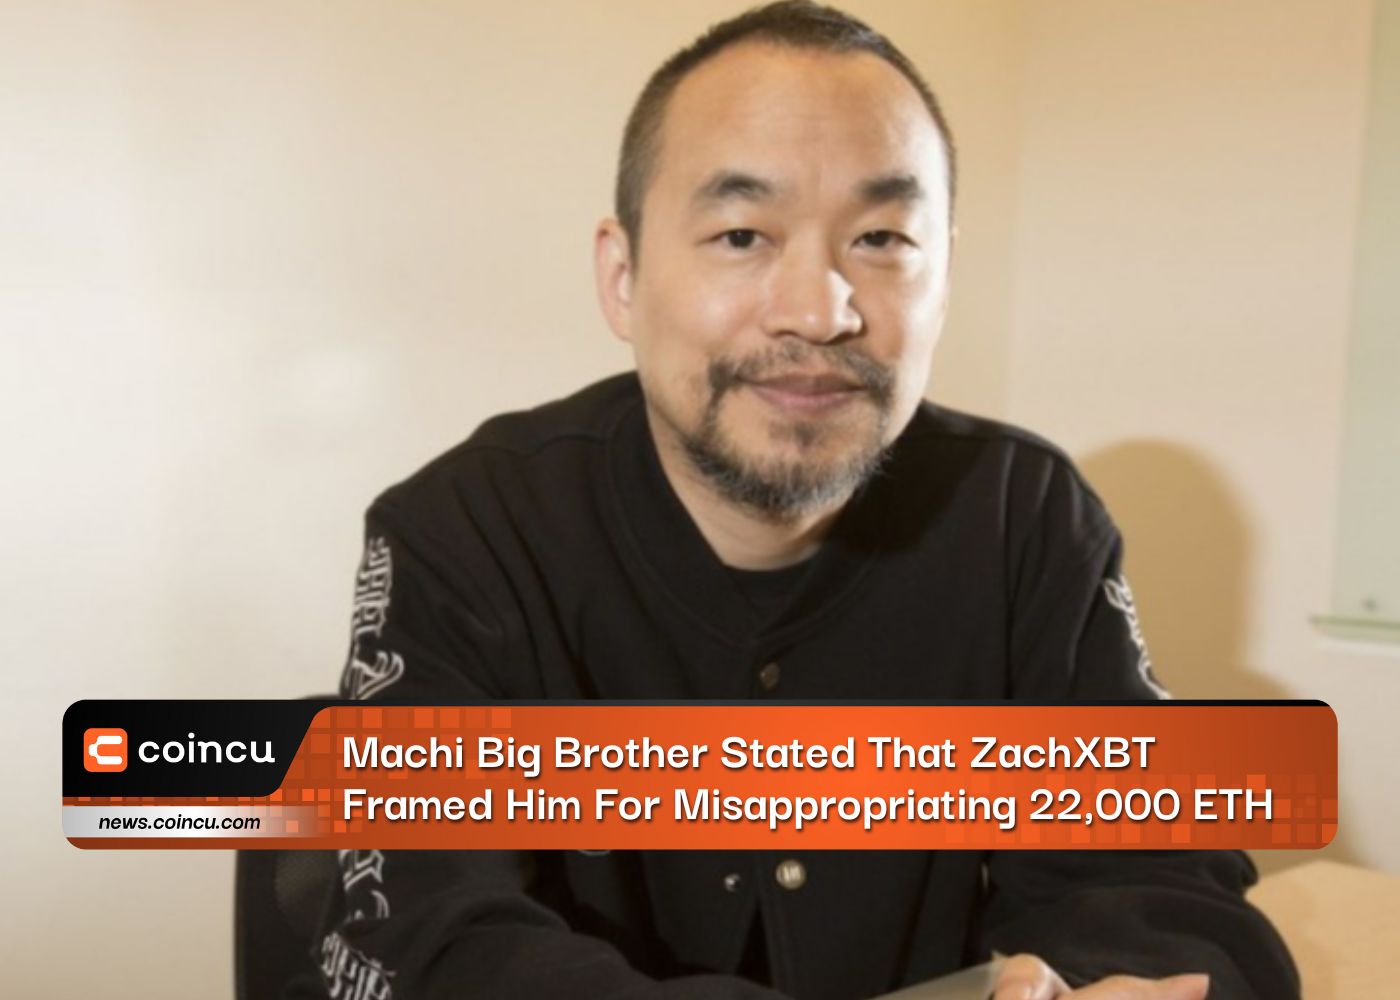 صرح Machi Big Brother أن ZachXBT قد أطره على اختلاس 22,000 ETH